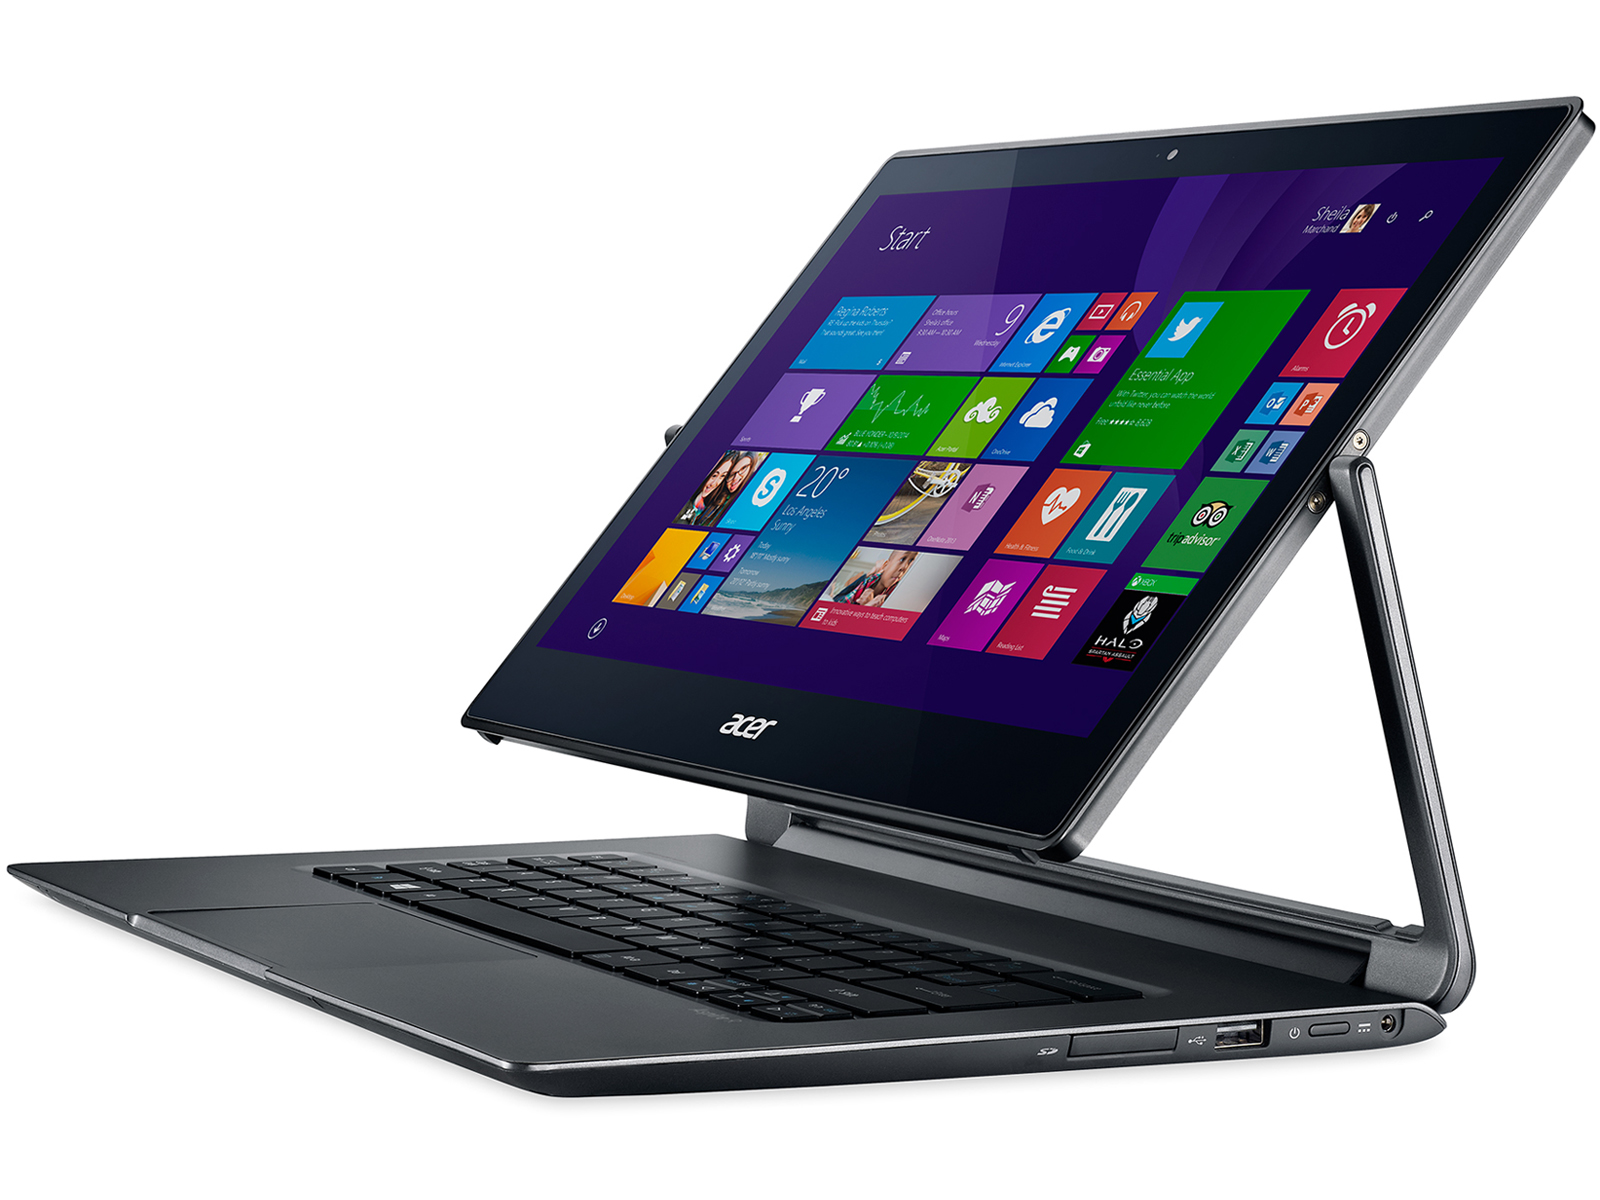 Acer Aspire R13 R7-371T-779K - Notebookcheck.net External Reviews